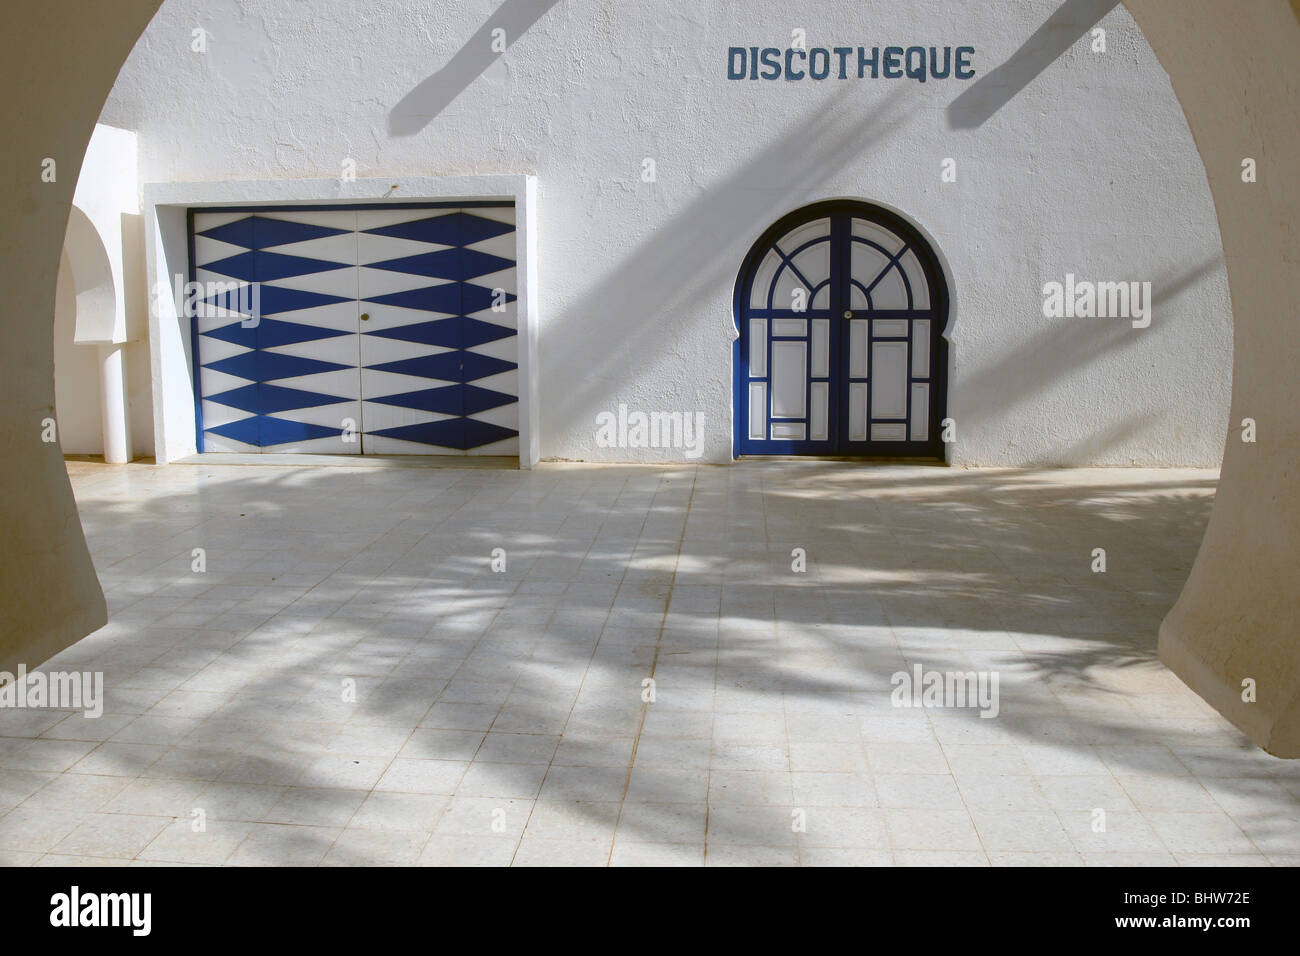 Discothèque sur l'île de Djerba Tunisie Banque D'Images